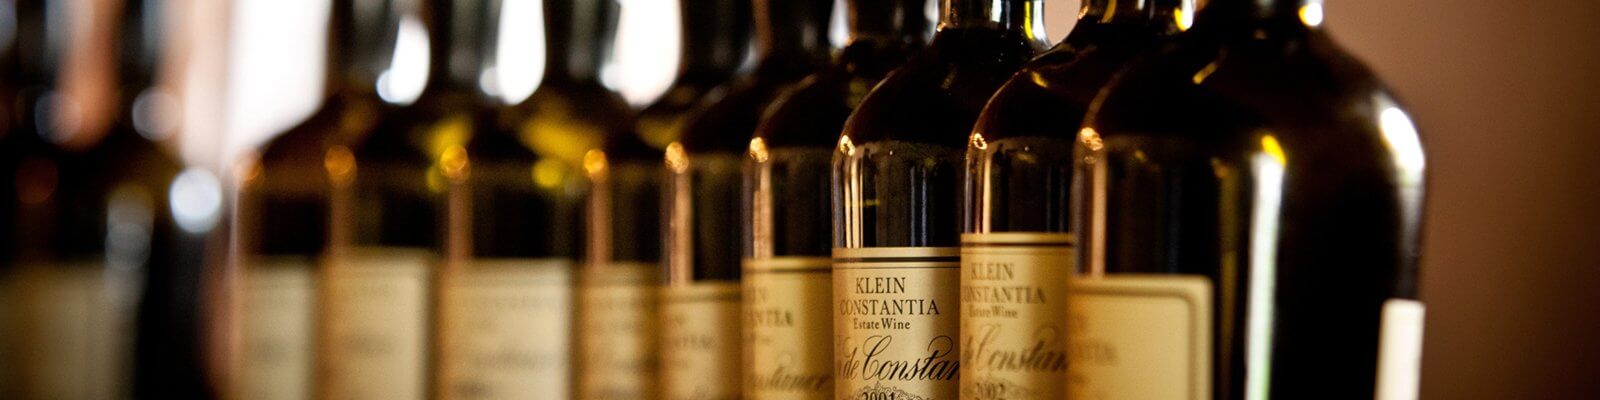 Nuestra colección de Klein Constantia - Encuéntrelo en Onshore Cellars su proveedor de vinos de yate